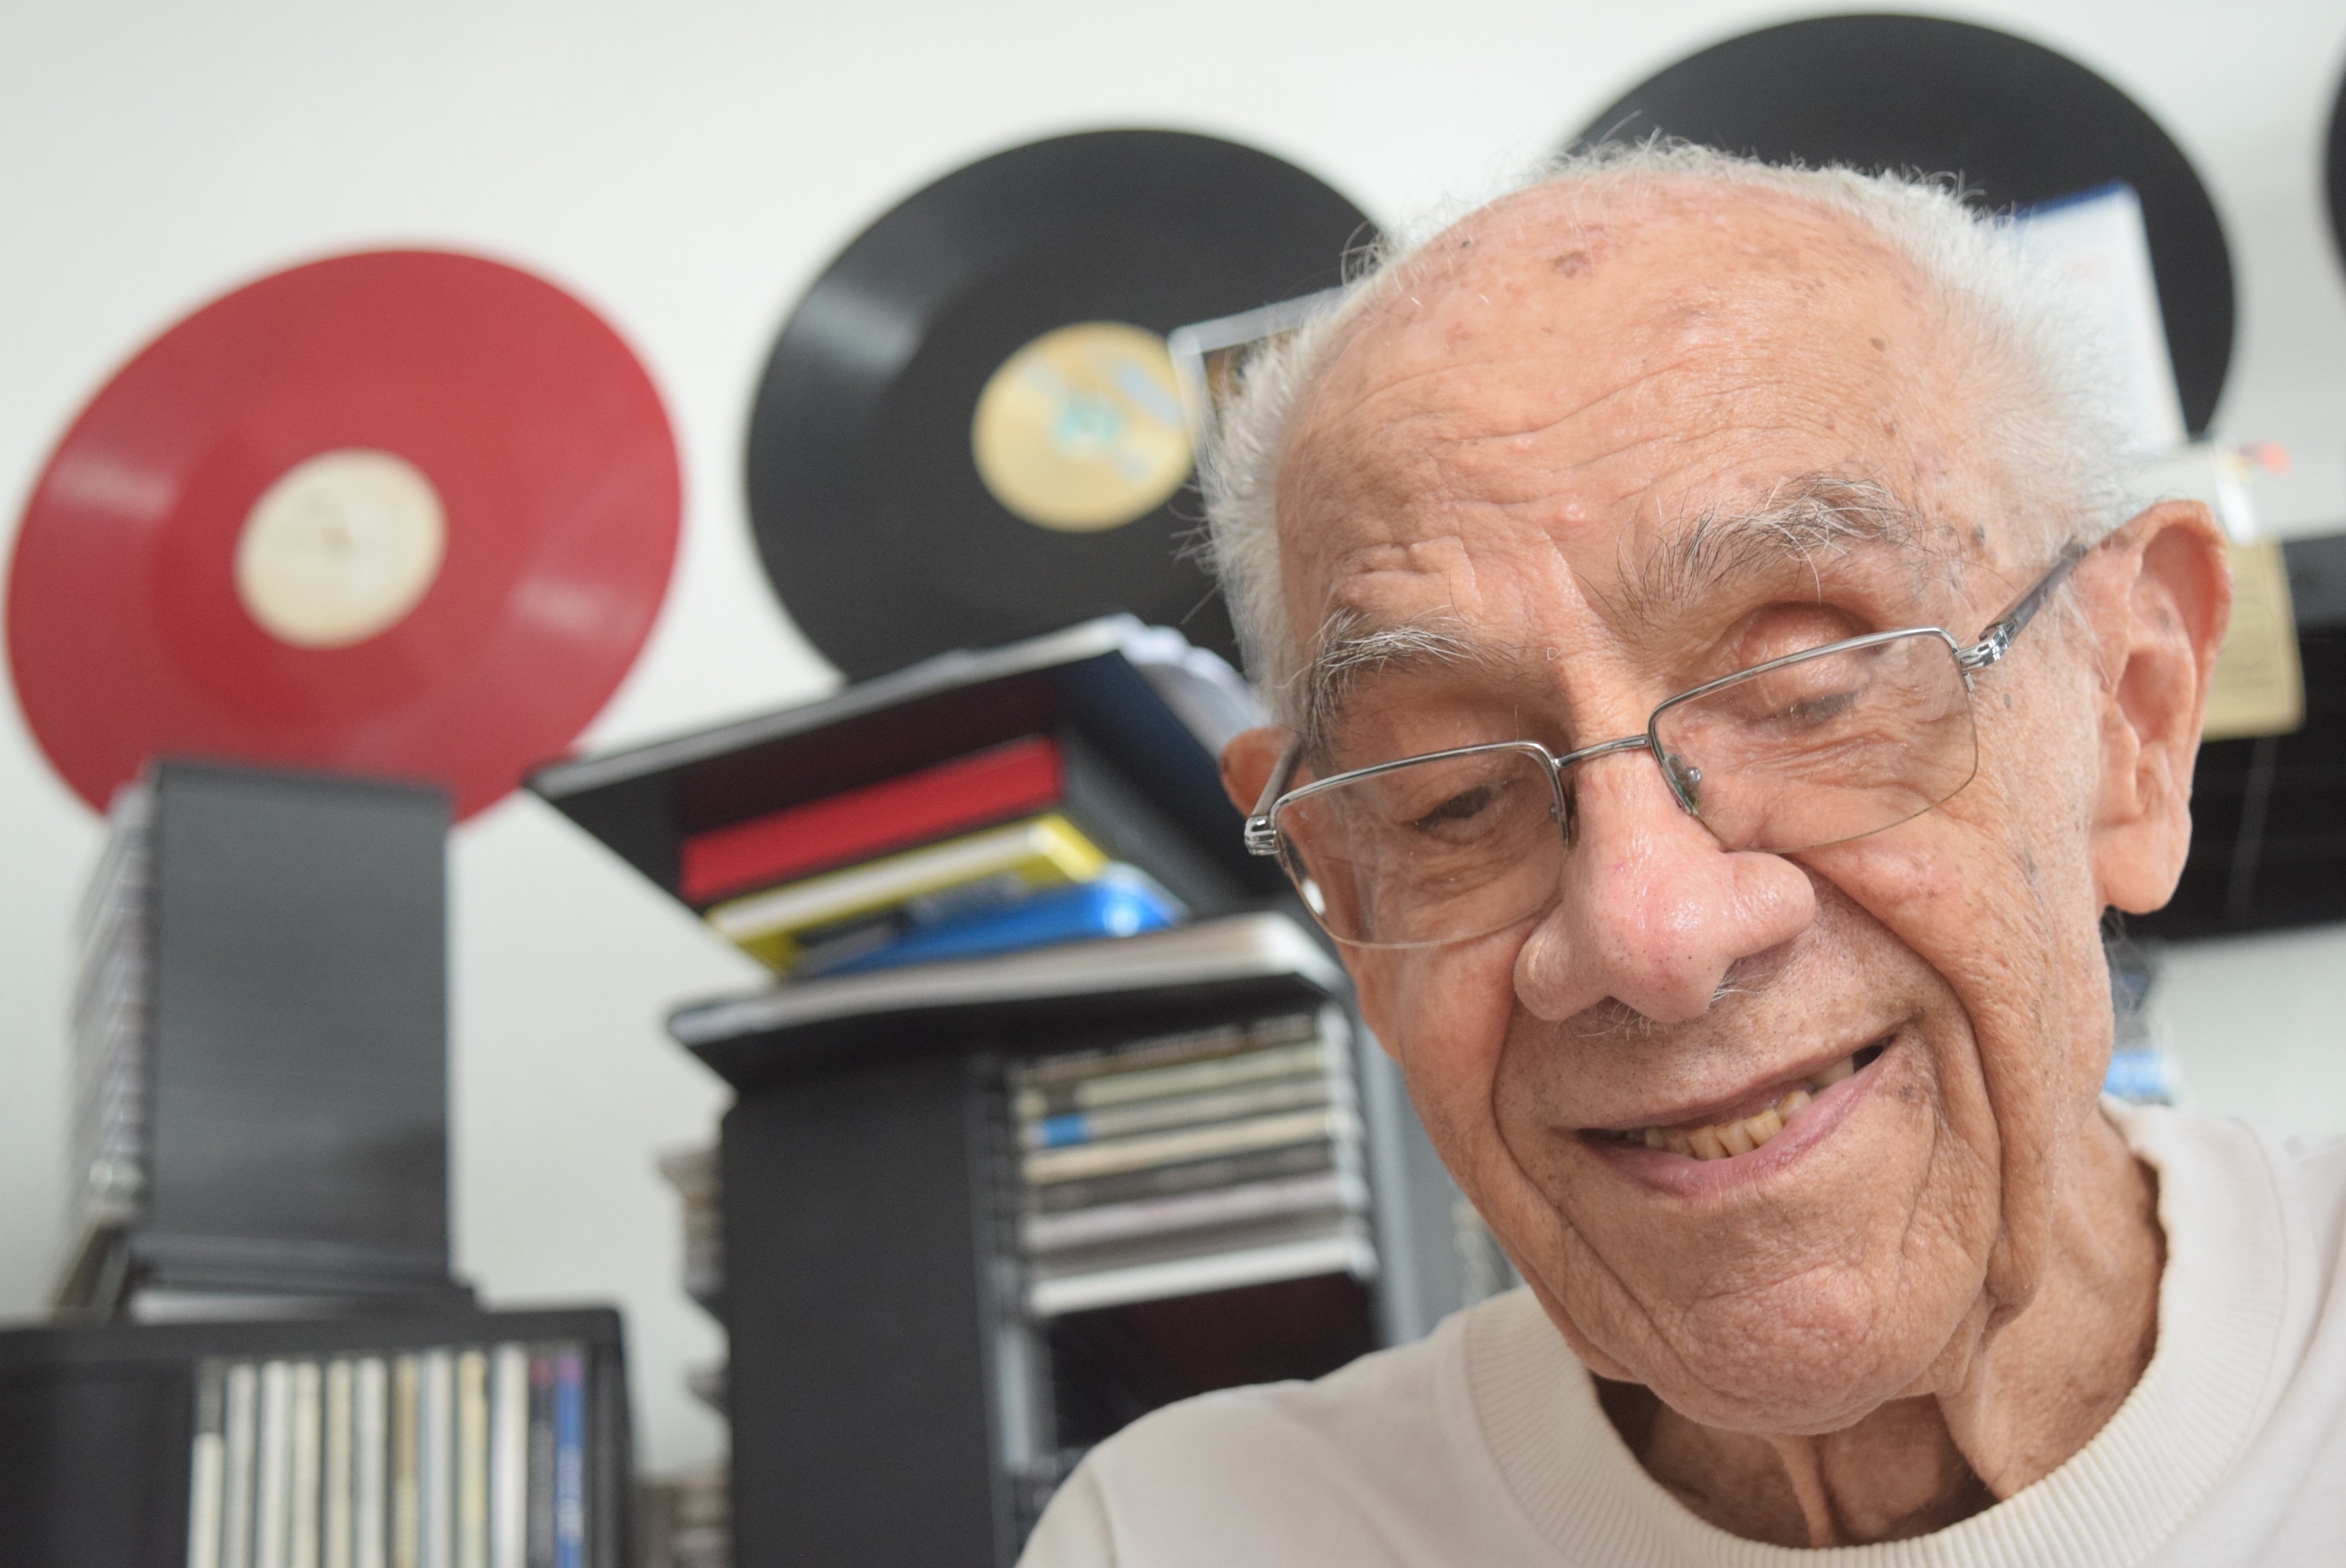 Dono de discos e autógrafos históricos, estudioso da música morreu em Vitória aos 96 anos. Família ainda vai decidir o que fazer com o acervo do jazzófilo